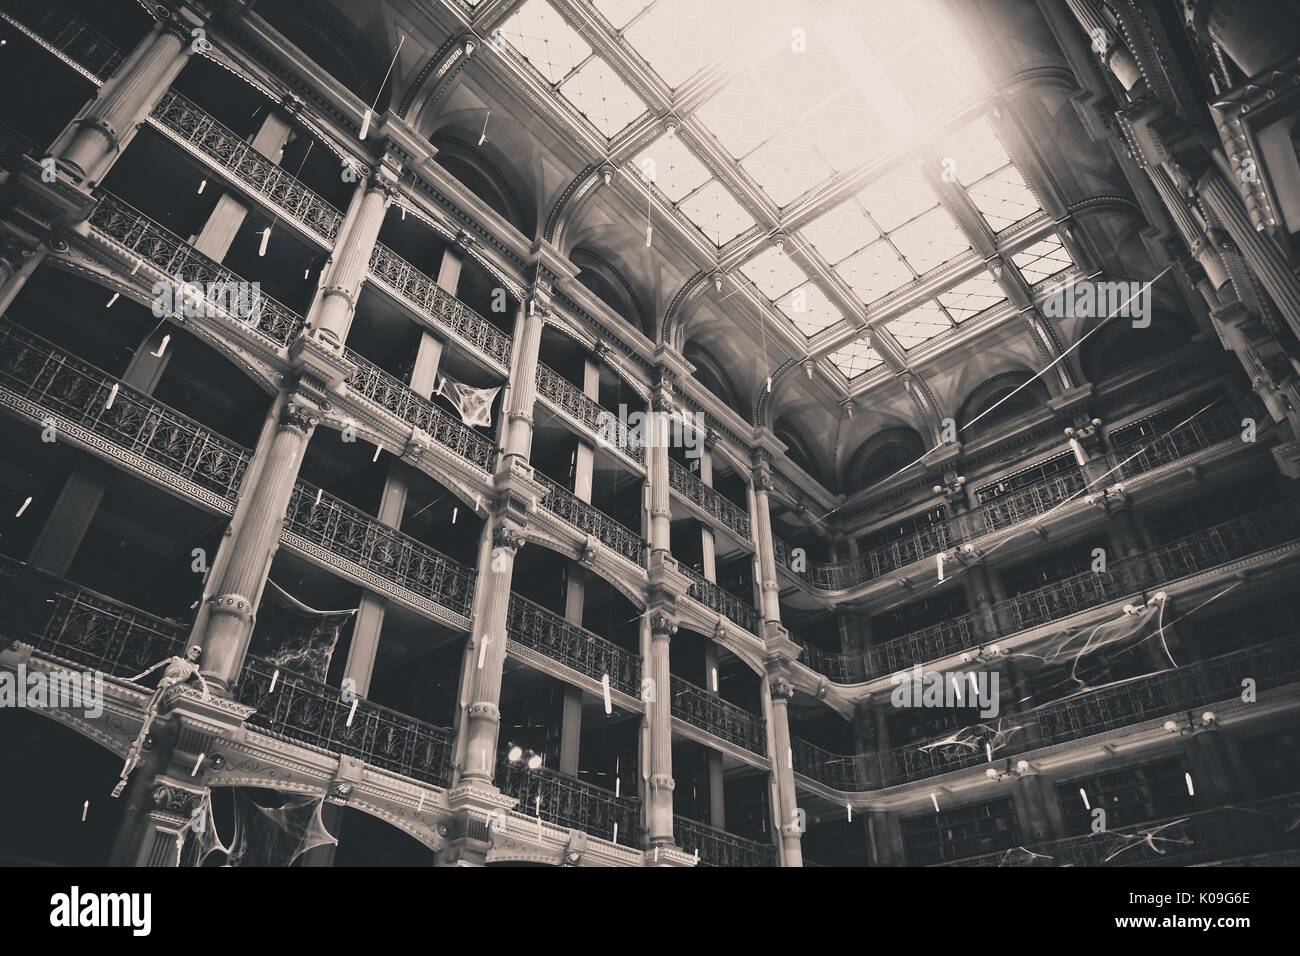 Schwarze und weiße Low Angle View suchen nach oben an den vielen Böden und Decken des George Peabody Library an der Johns Hopkins University, 2015. Mit freundlicher Genehmigung von Eric Chen. Stockfoto